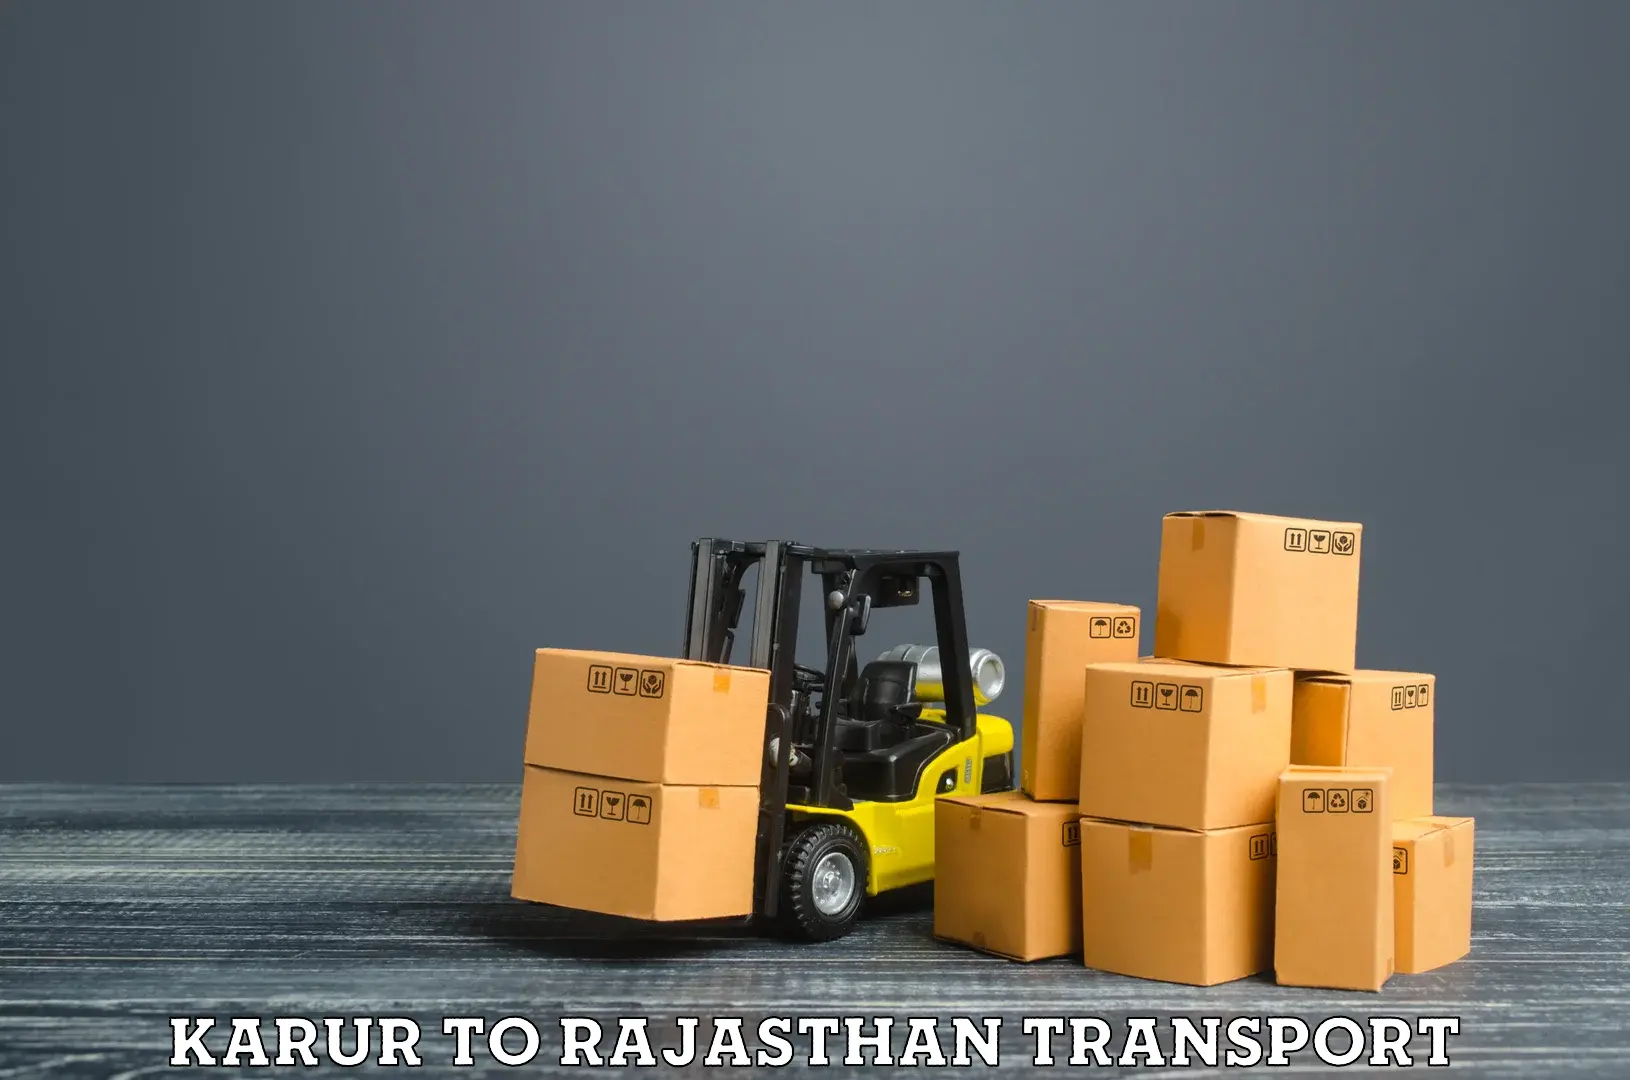 Furniture transport service Karur to Rawatsar